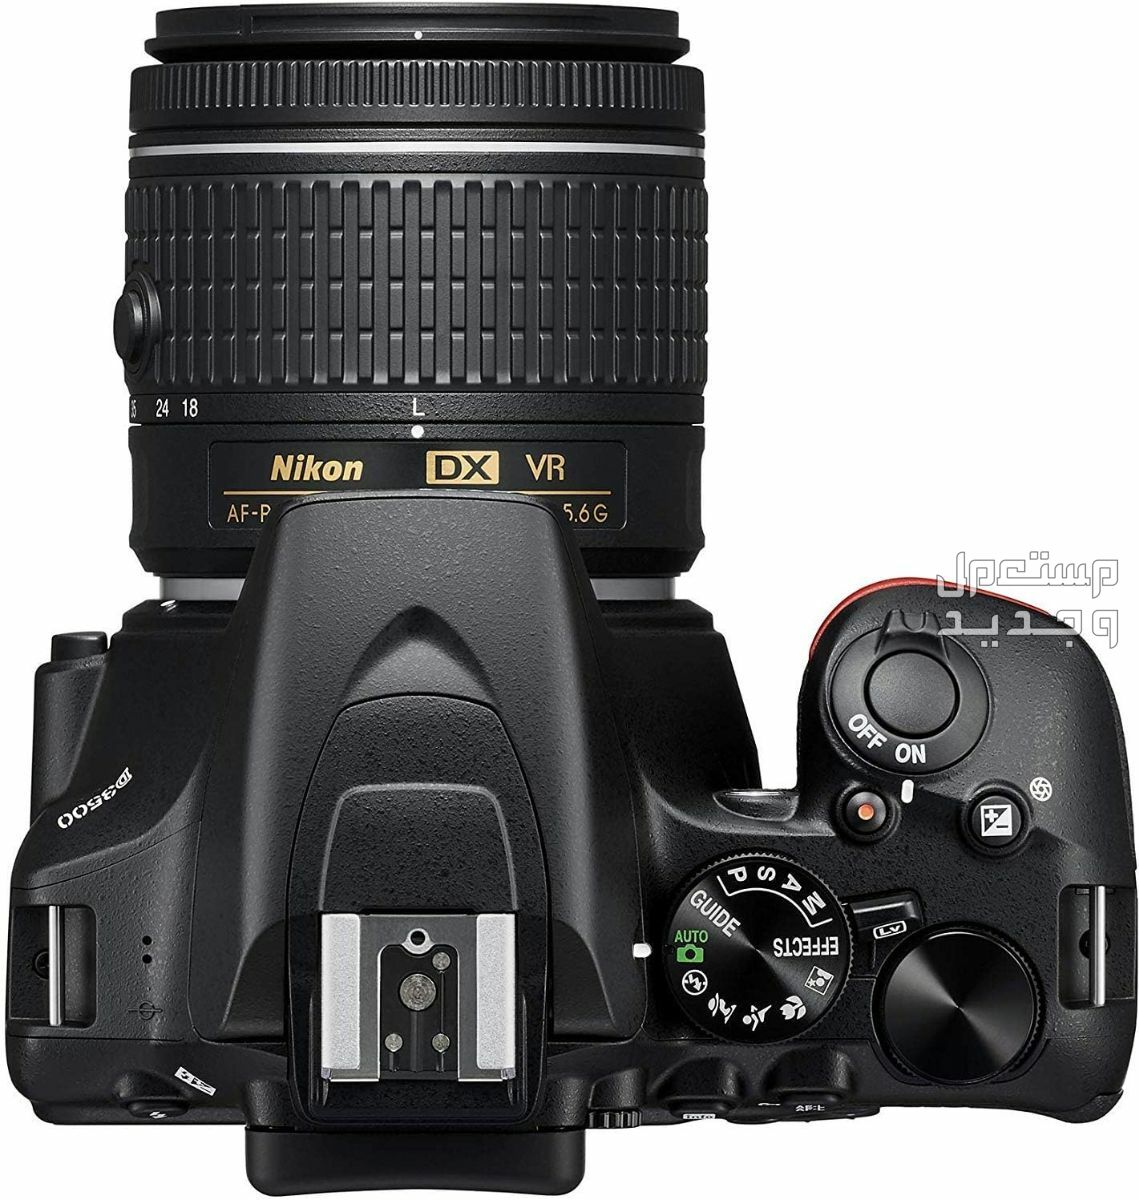 10 كاميرات تصوير ماركات عالمية بأسعار رخيصة في لبنان سعر كاميرا Nikon D3500